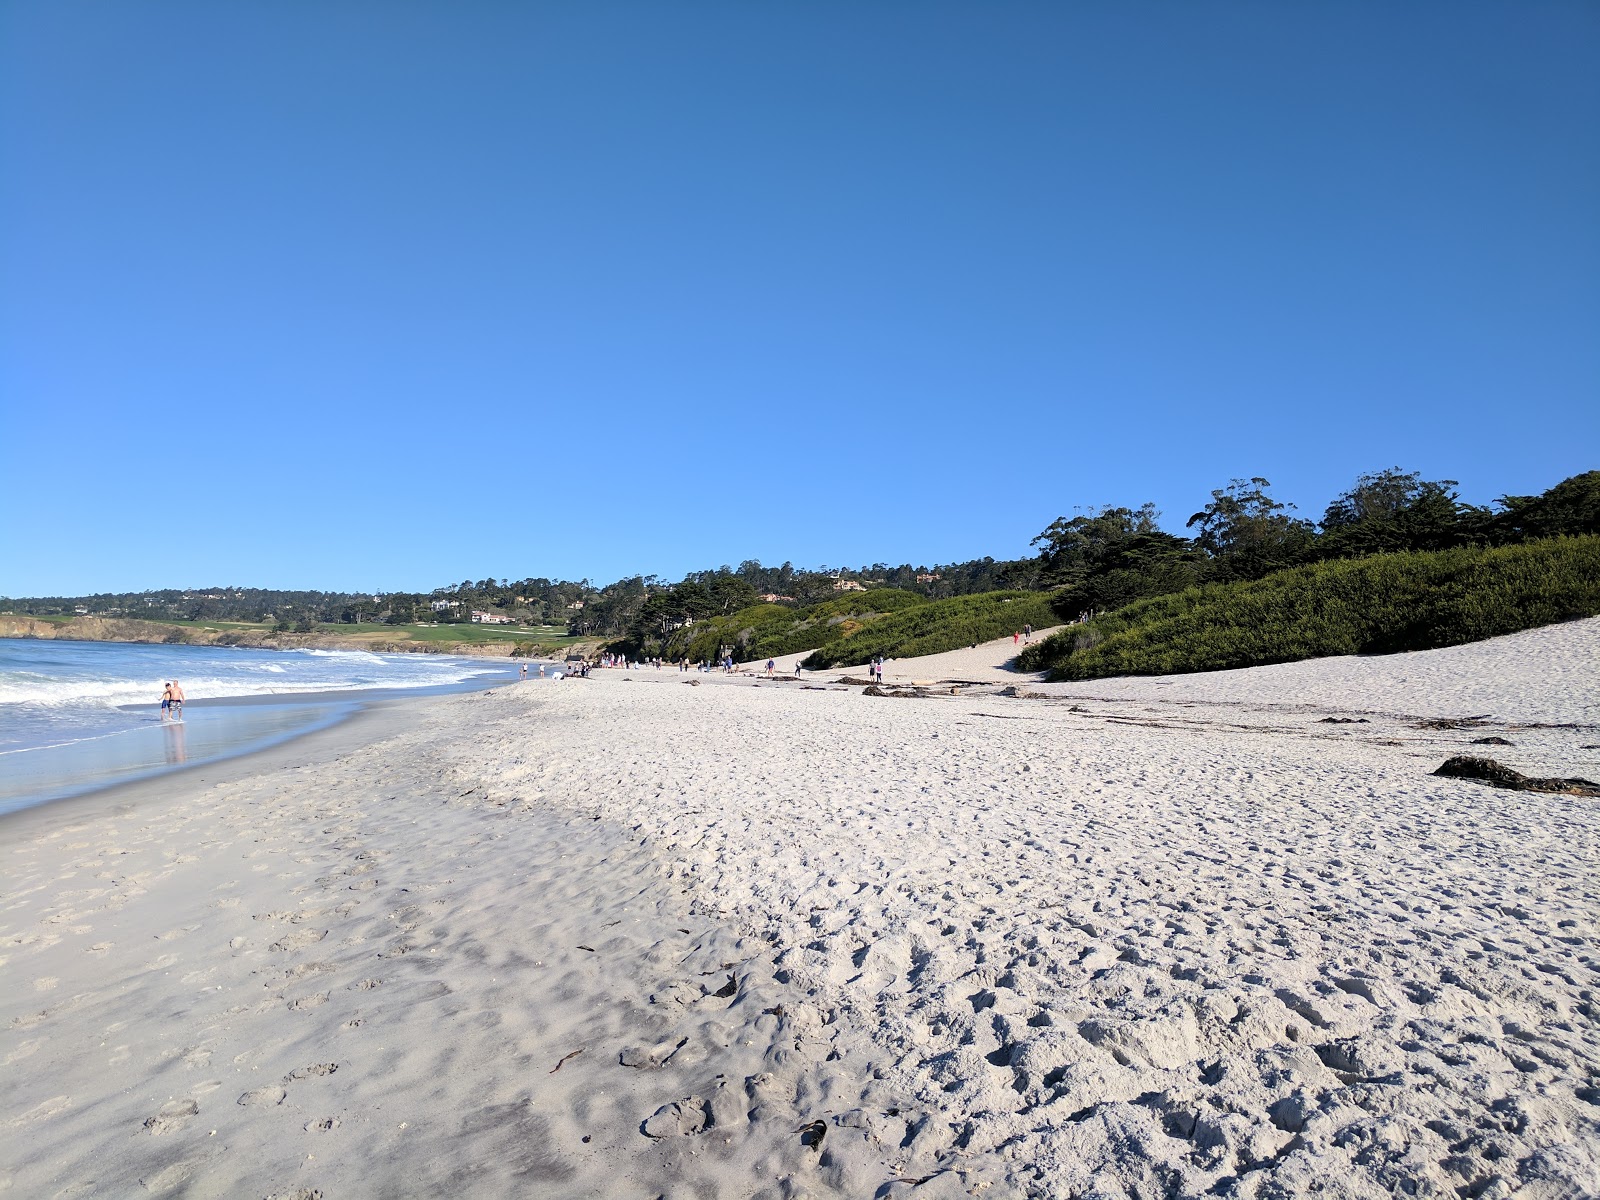 Fotografie cu Carmel Beach cu o suprafață de nisip fin alb